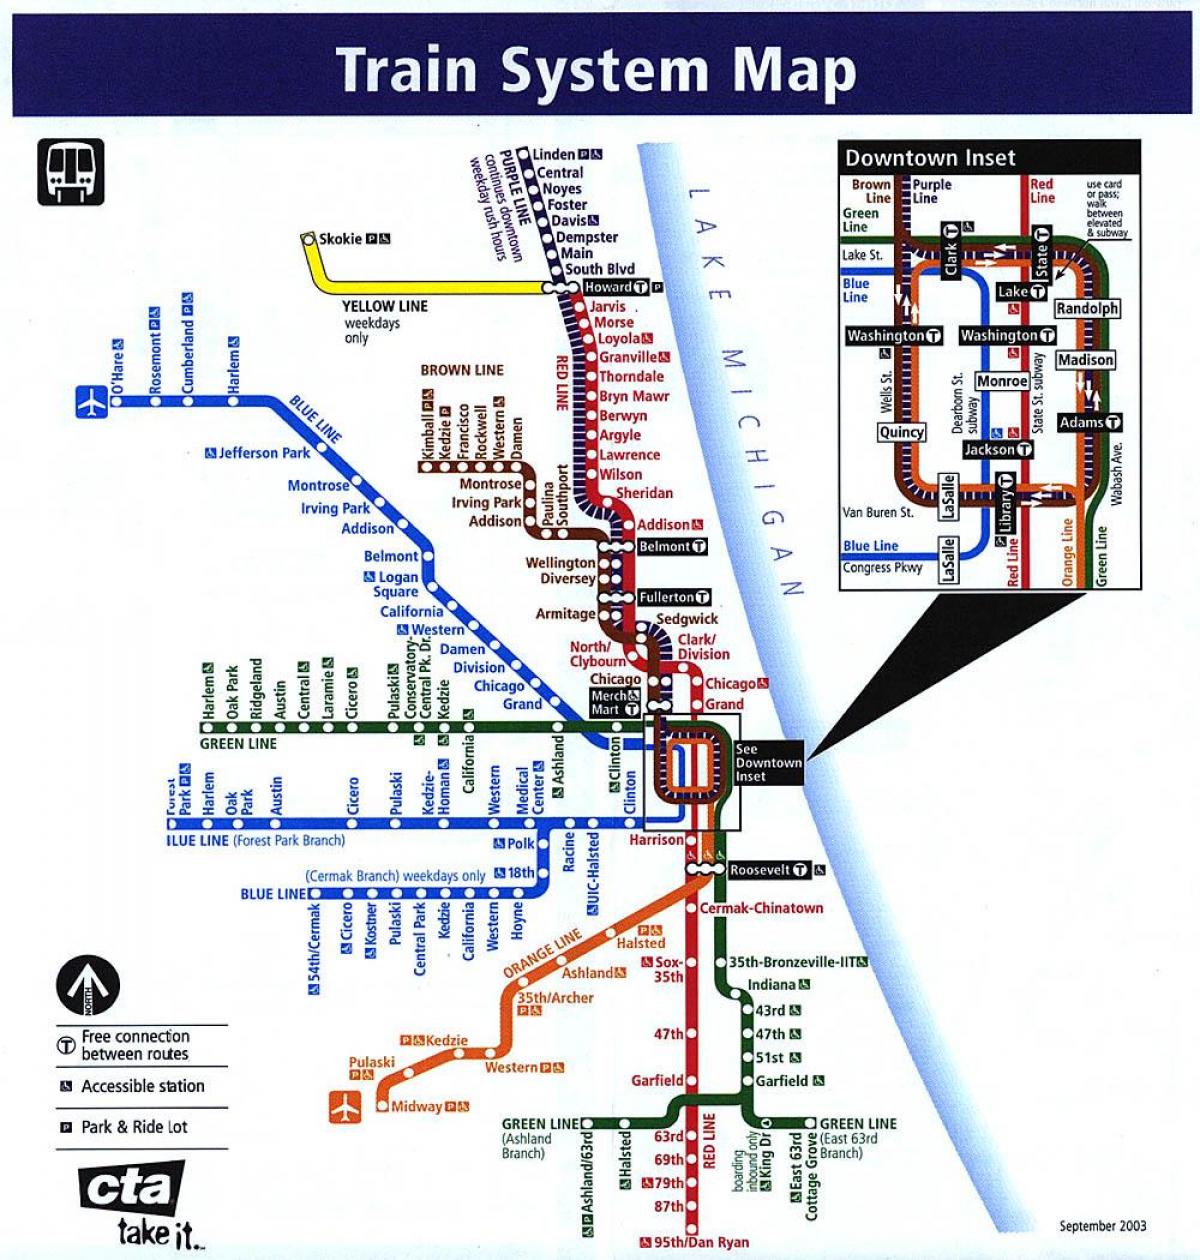 Chicago métro liy kat jeyografik